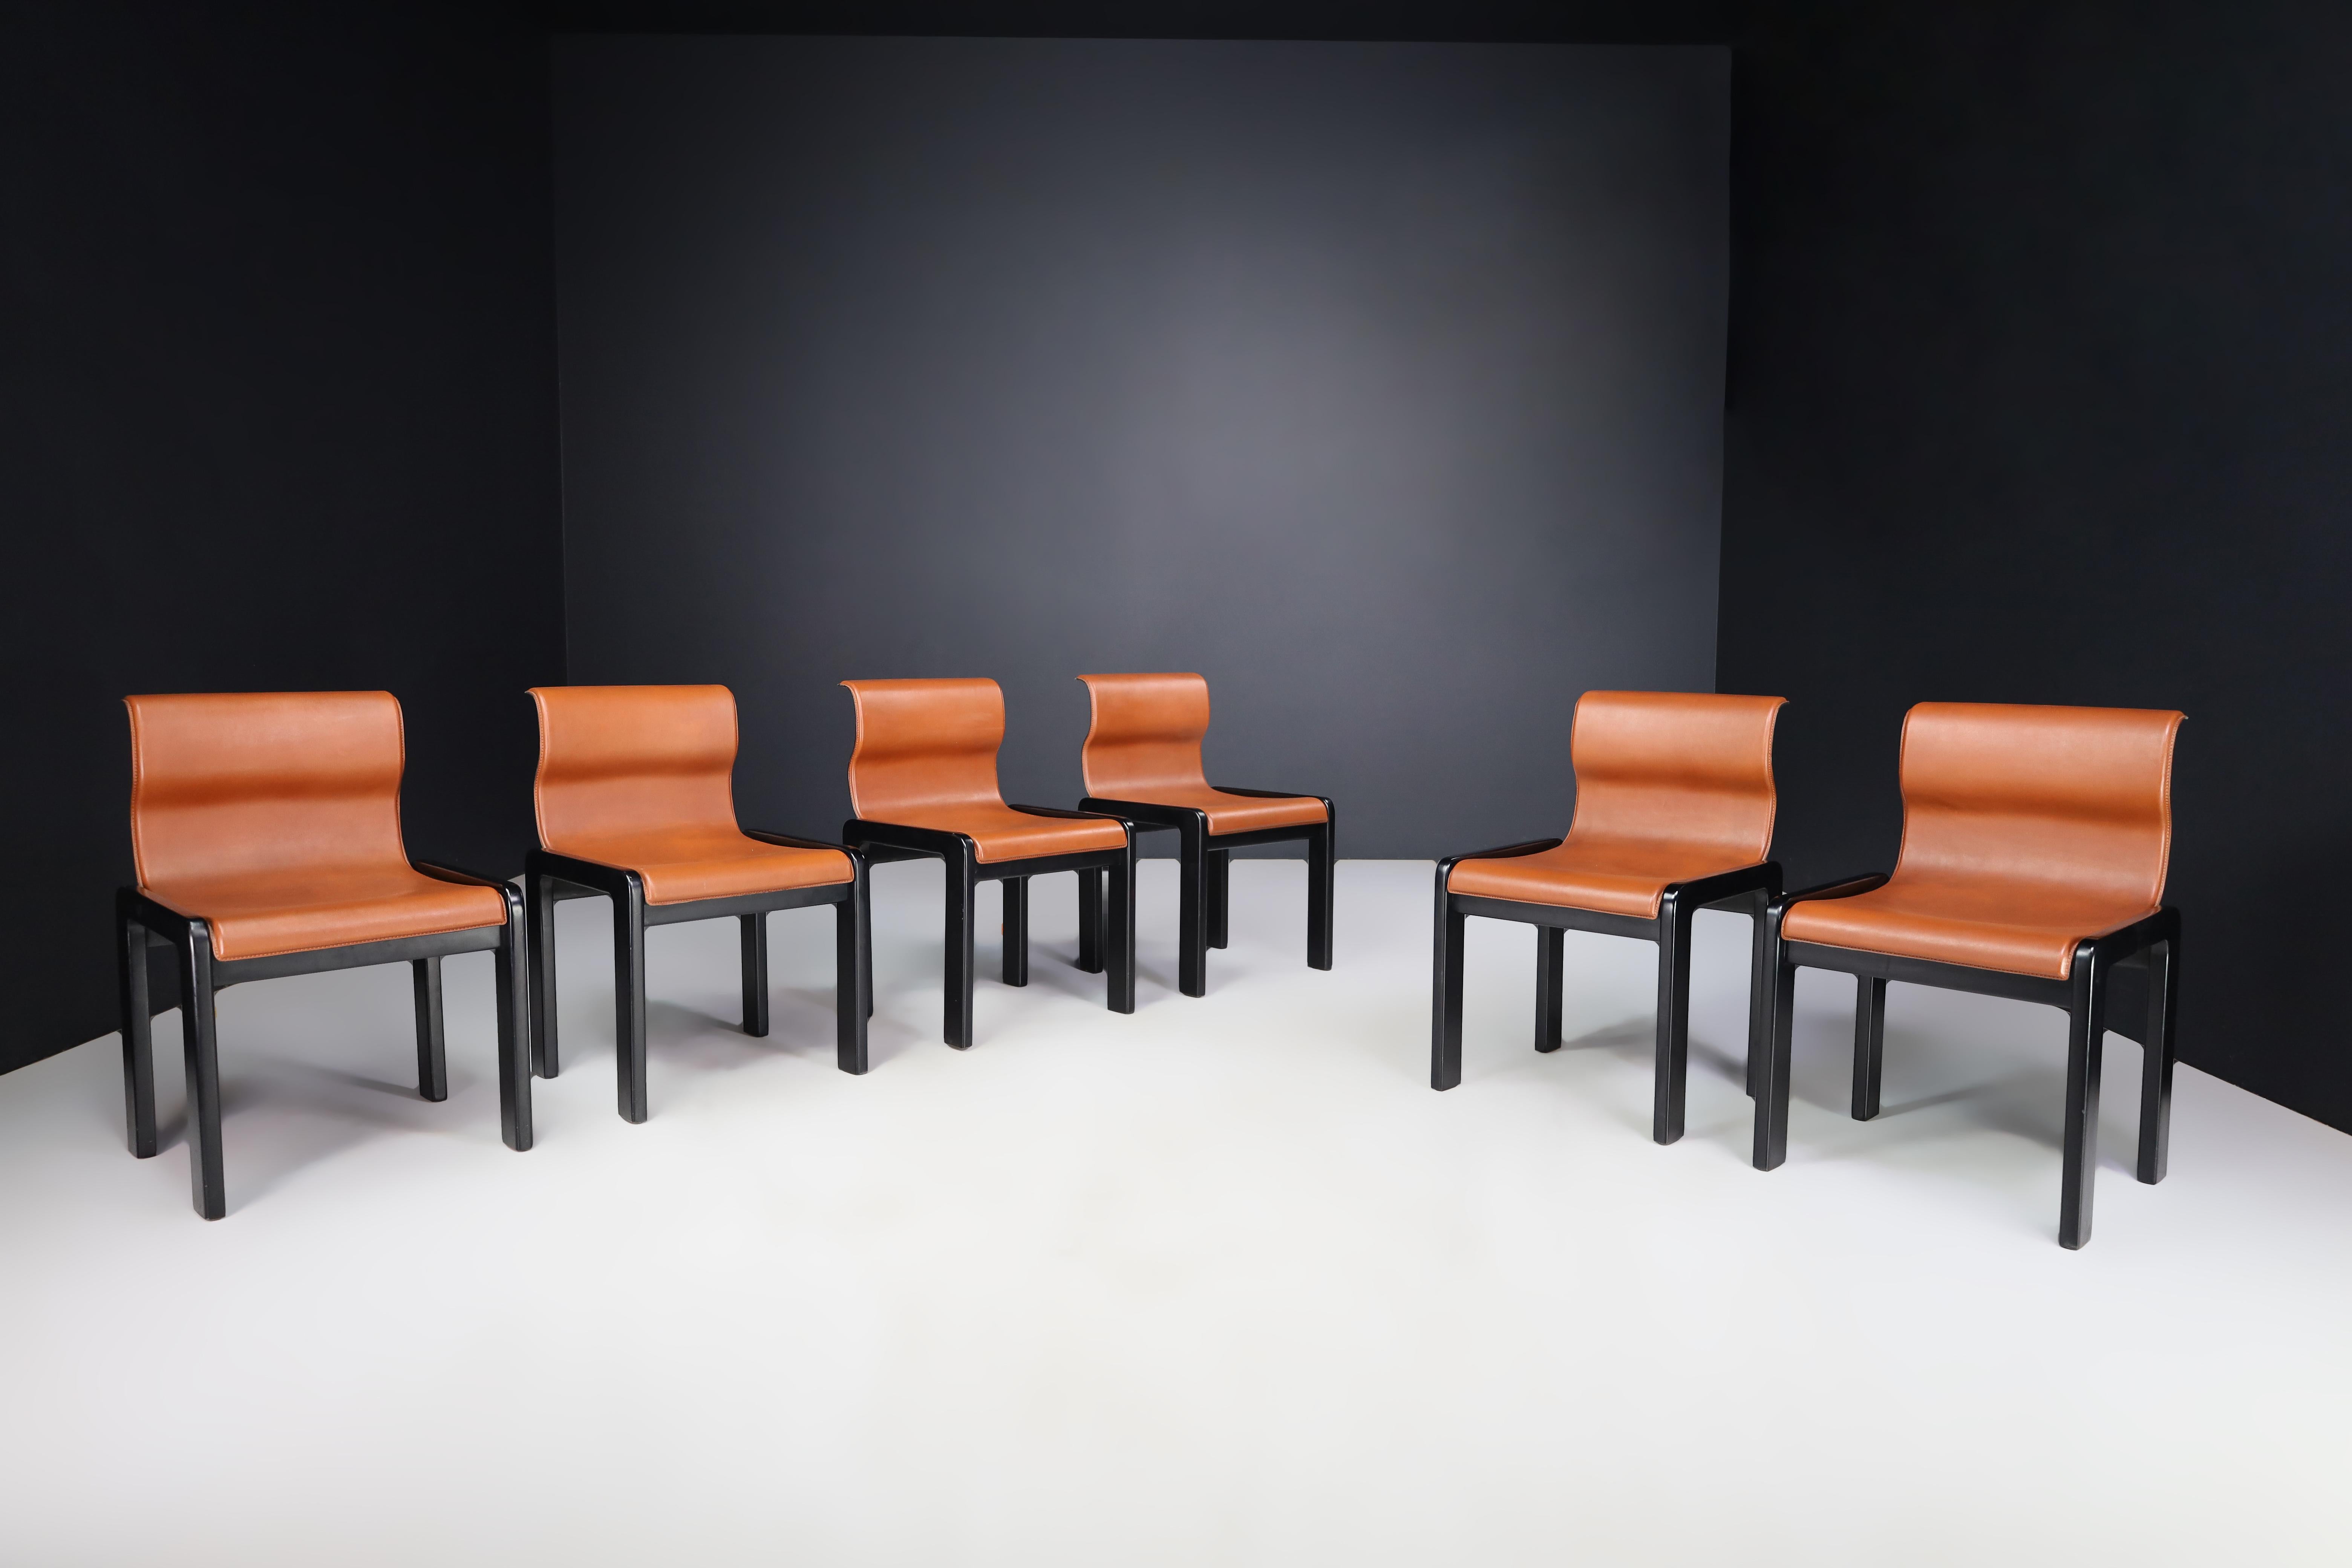 Afra & Tobia Scarpa Satz von sechs Esszimmerstühlen aus cognacfarbenem Leder und schwarz lackiertem Holz, Italien 1966

Dies ist ein fantastisches Set aus sechs Esszimmerstühlen aus cognacbraunem Leder und schwarz lackiertem Holz. Sie wurden 1966 in